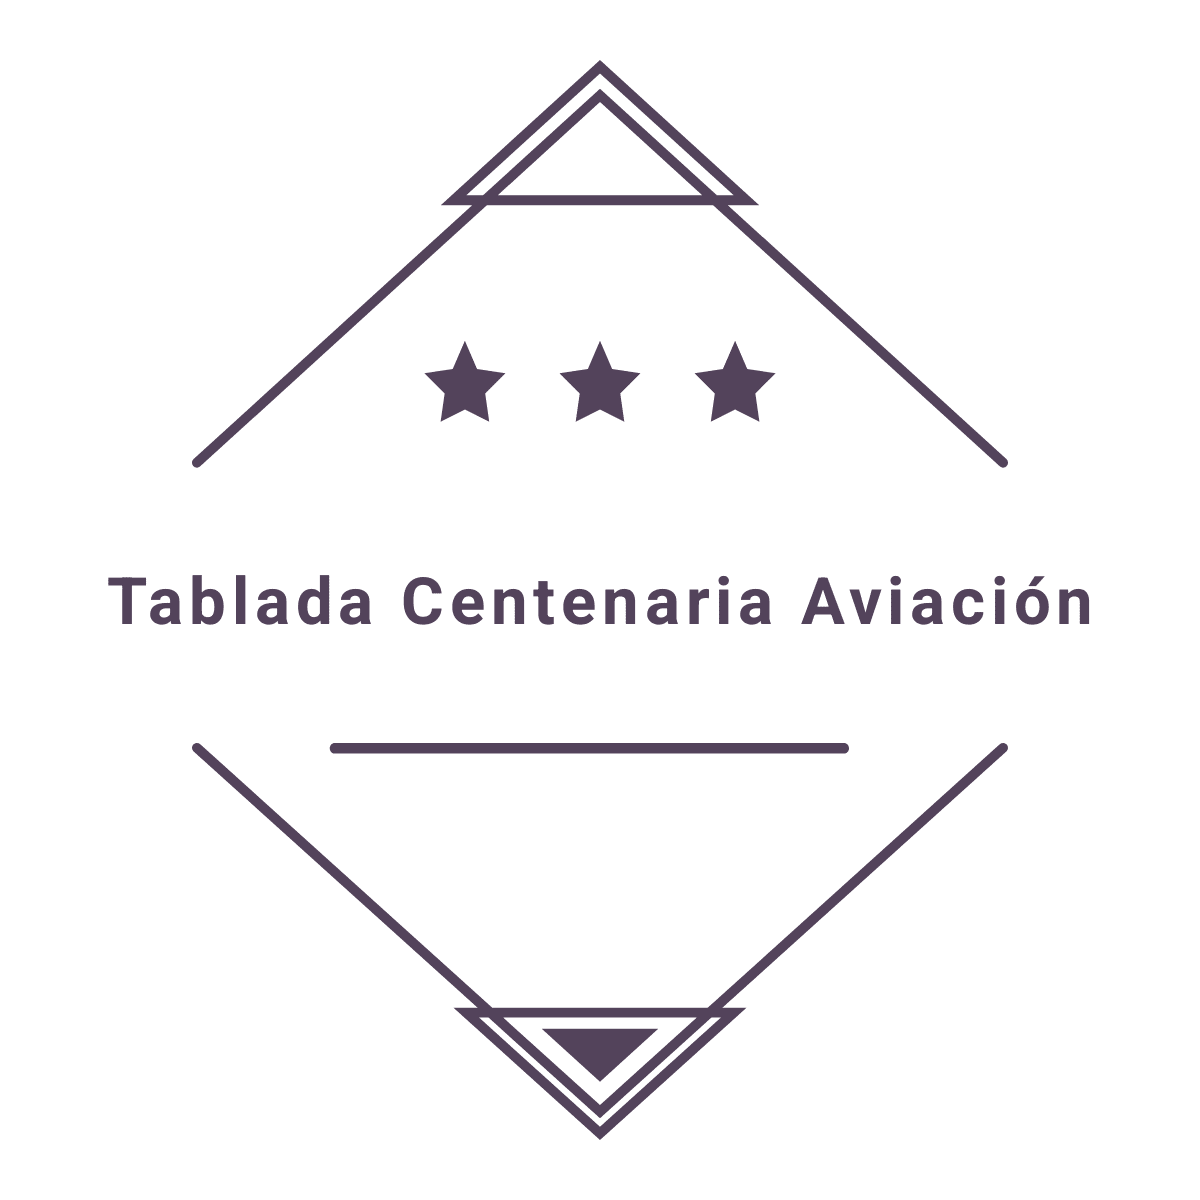 Tablada Centenaria Aviación